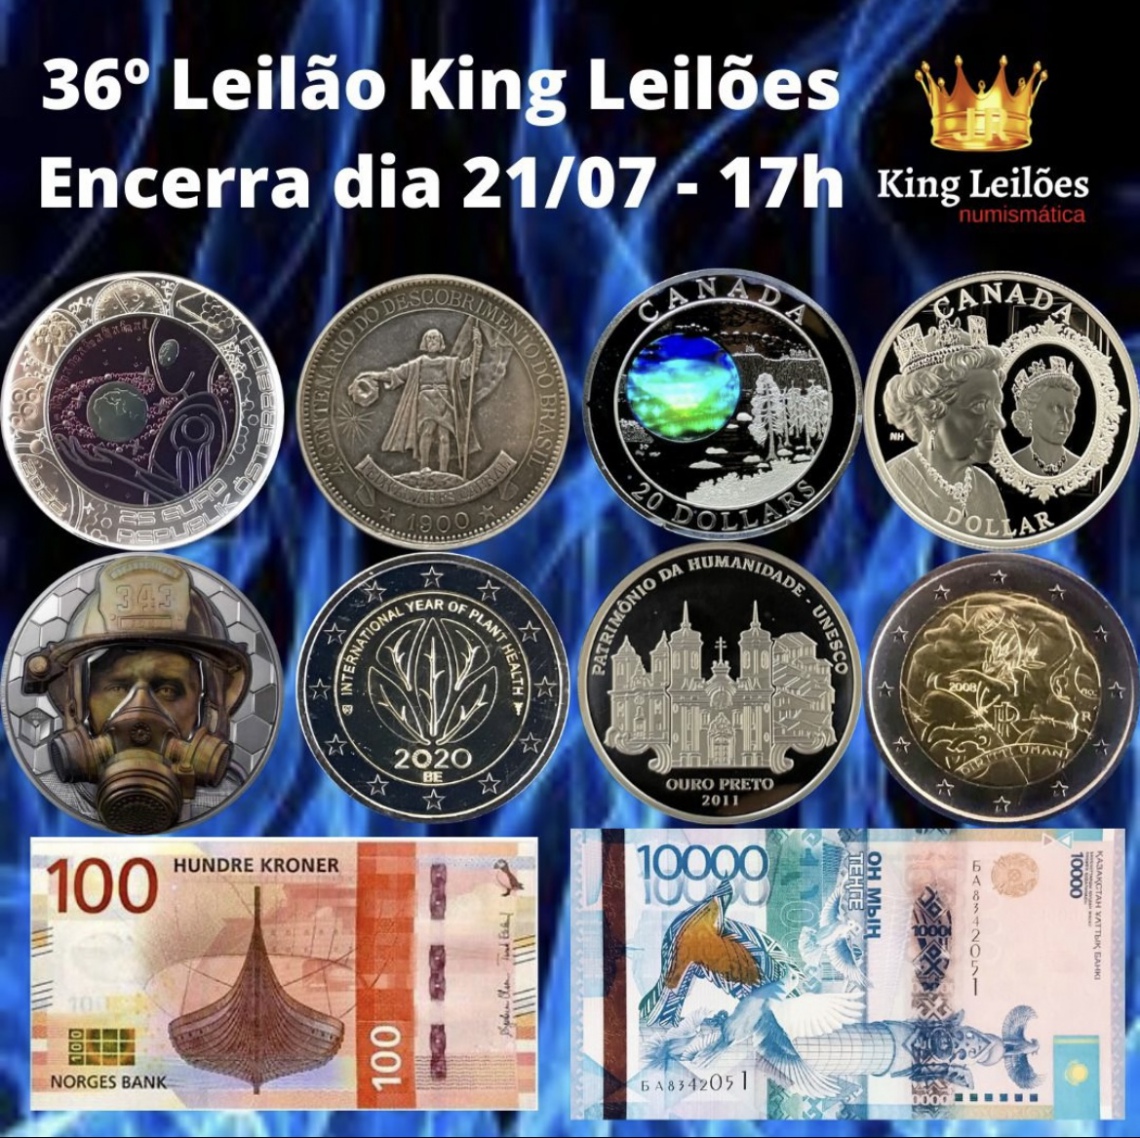 36º LEILÃO KING LEILÕES DE NUMISMÁTICA, MULTICOLECIONISMO E ANTIGUIDADES